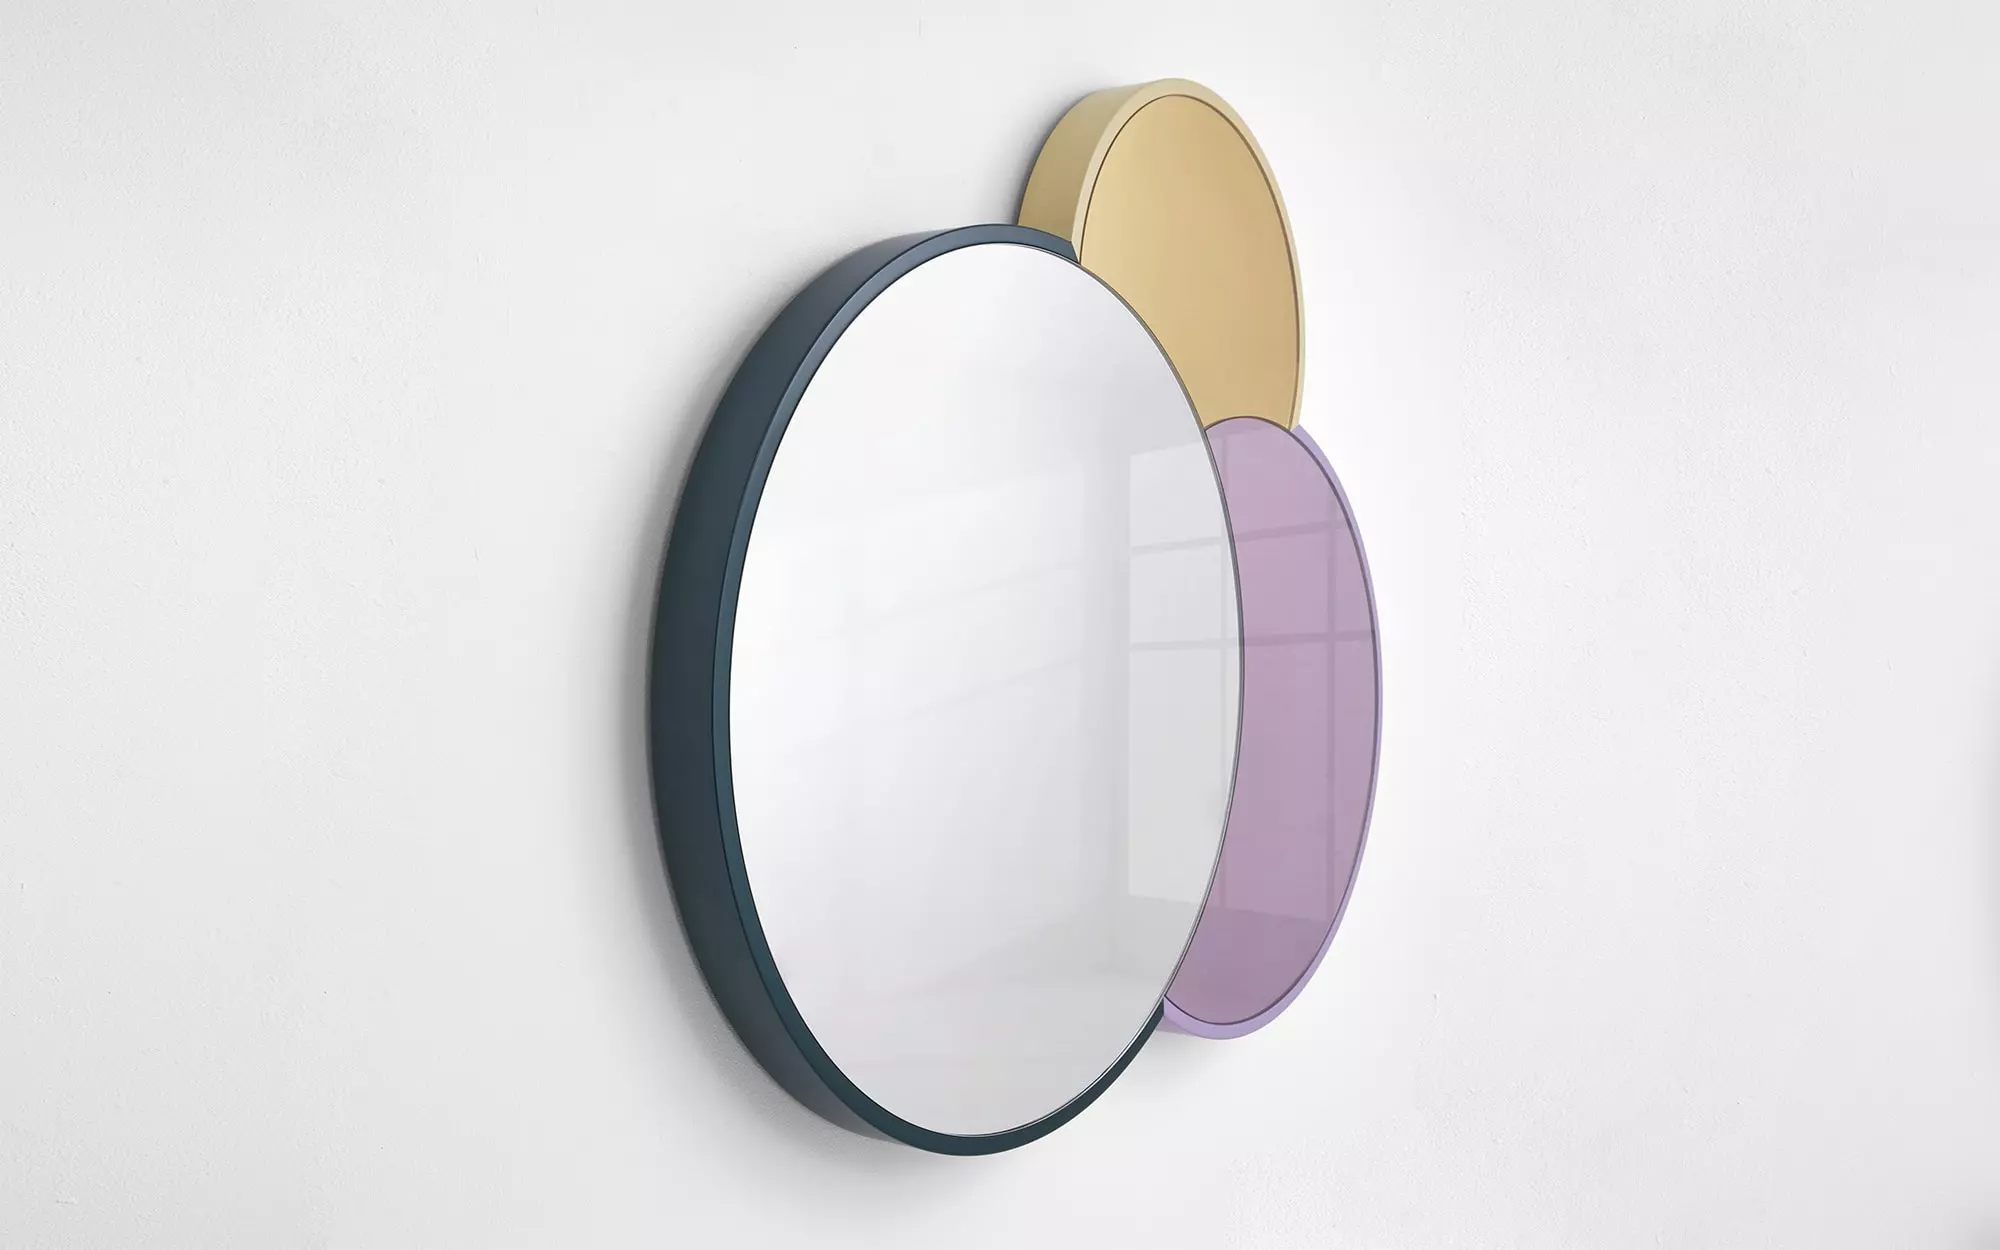 Triple Lune Mirror - Doshi Levien - Lucas Ratton x kamel mennour x Galerie kreo x Jacques Lacoste @Saint-Tropez.